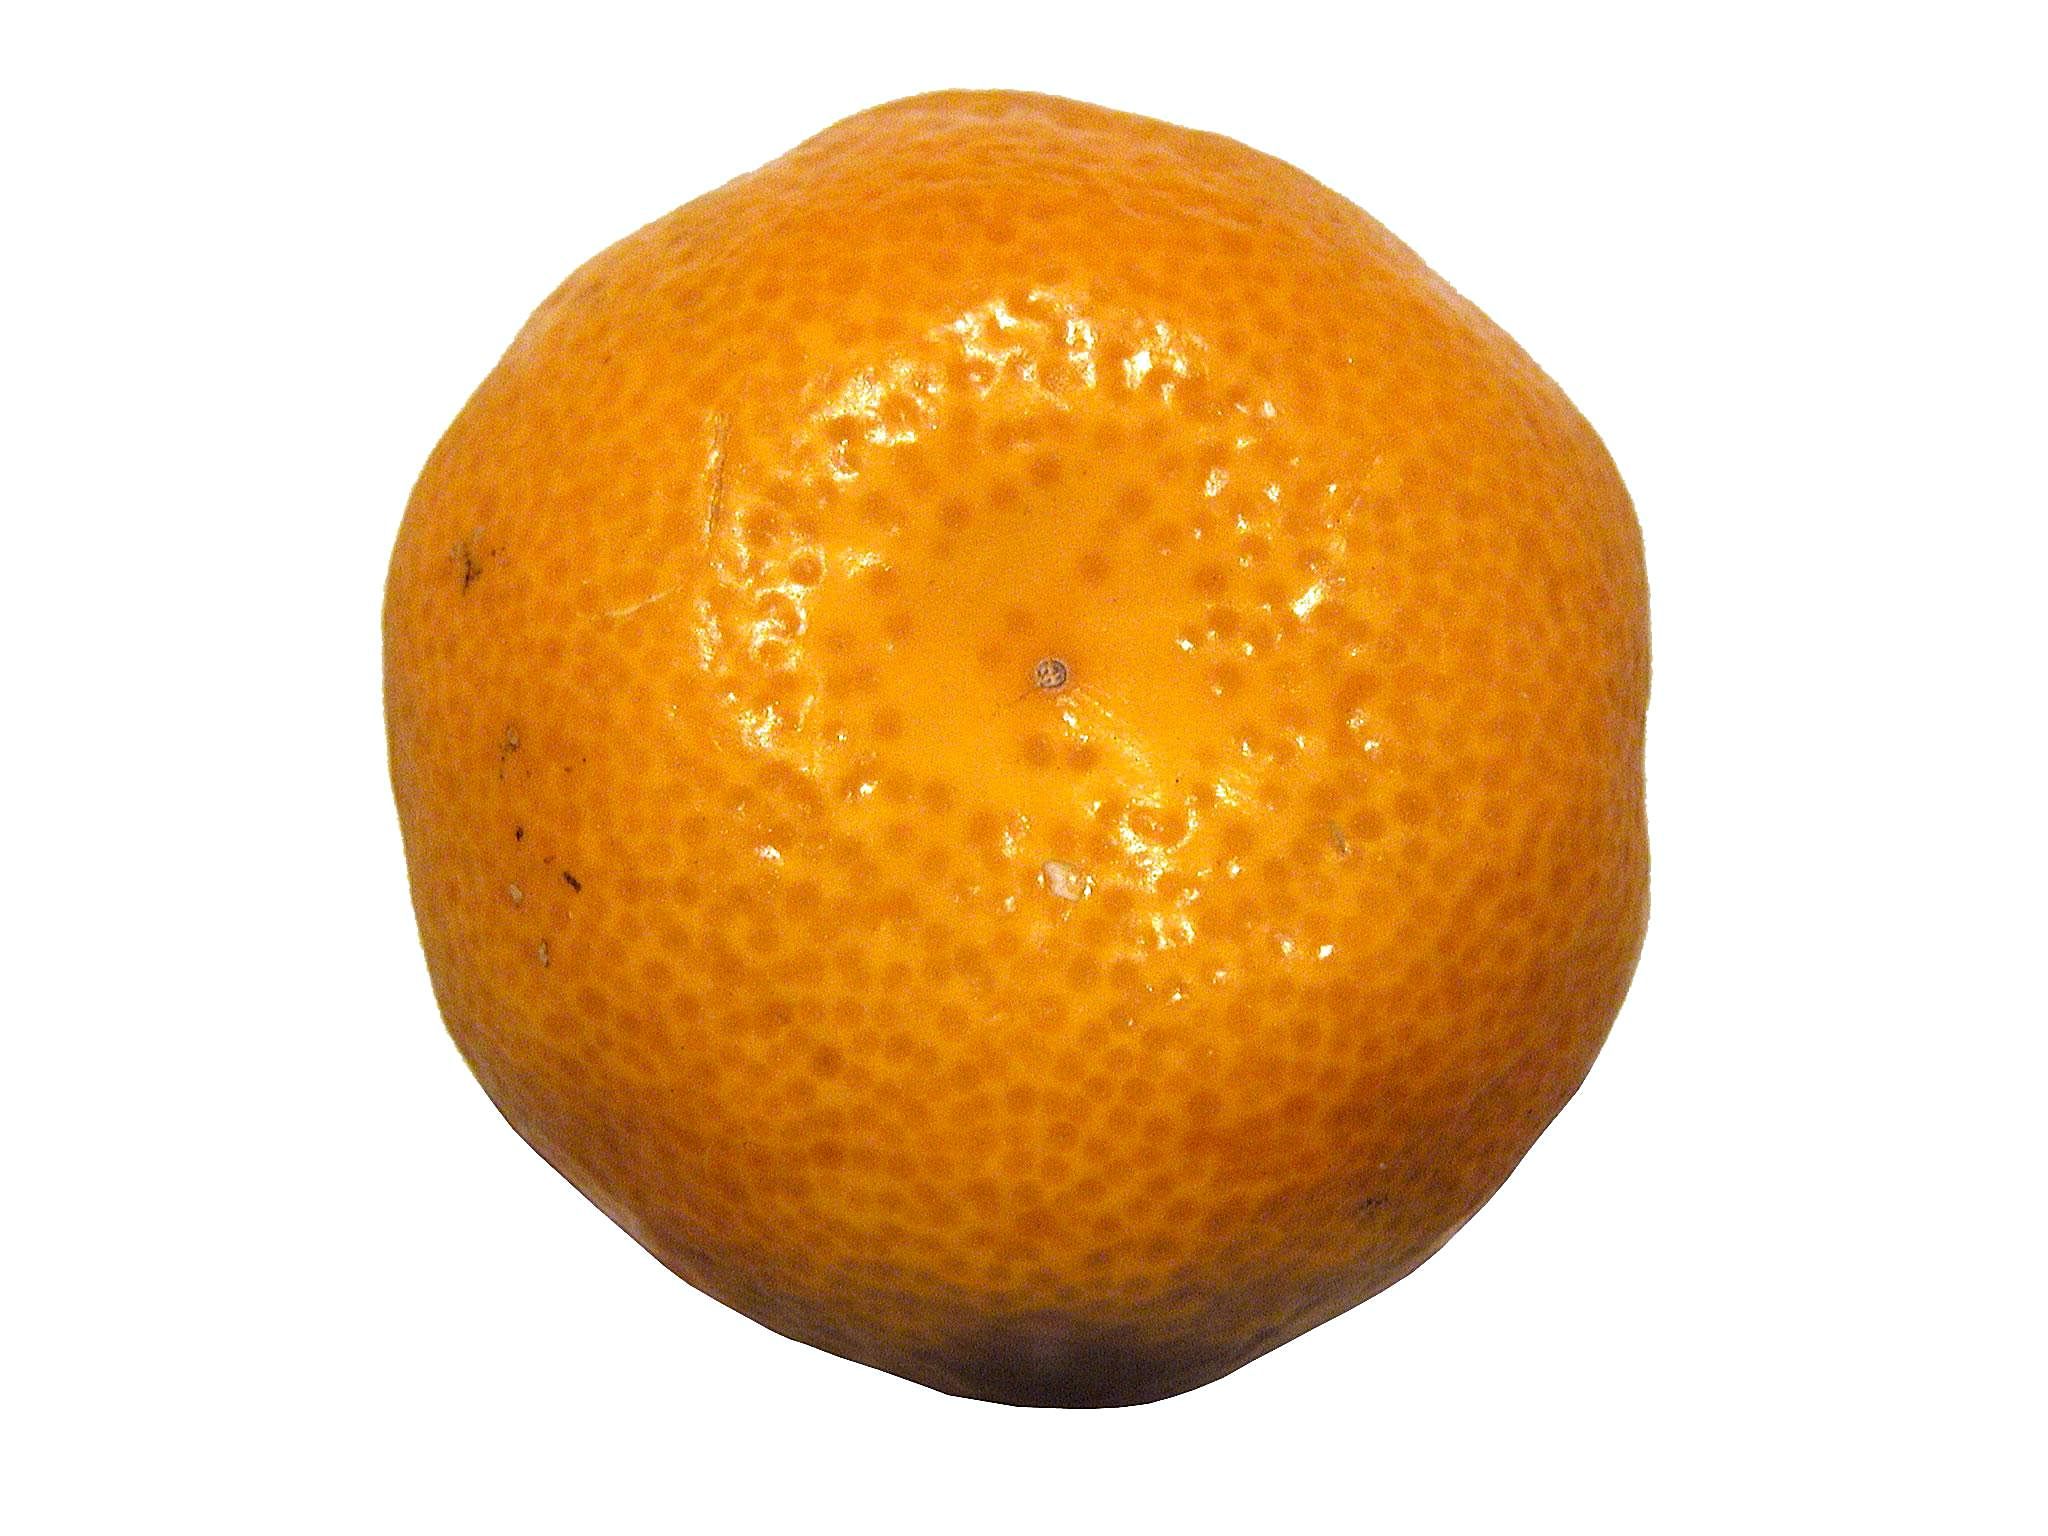 Mandarin Oranges Are A Healthy Snack - Virgo Philosophy®